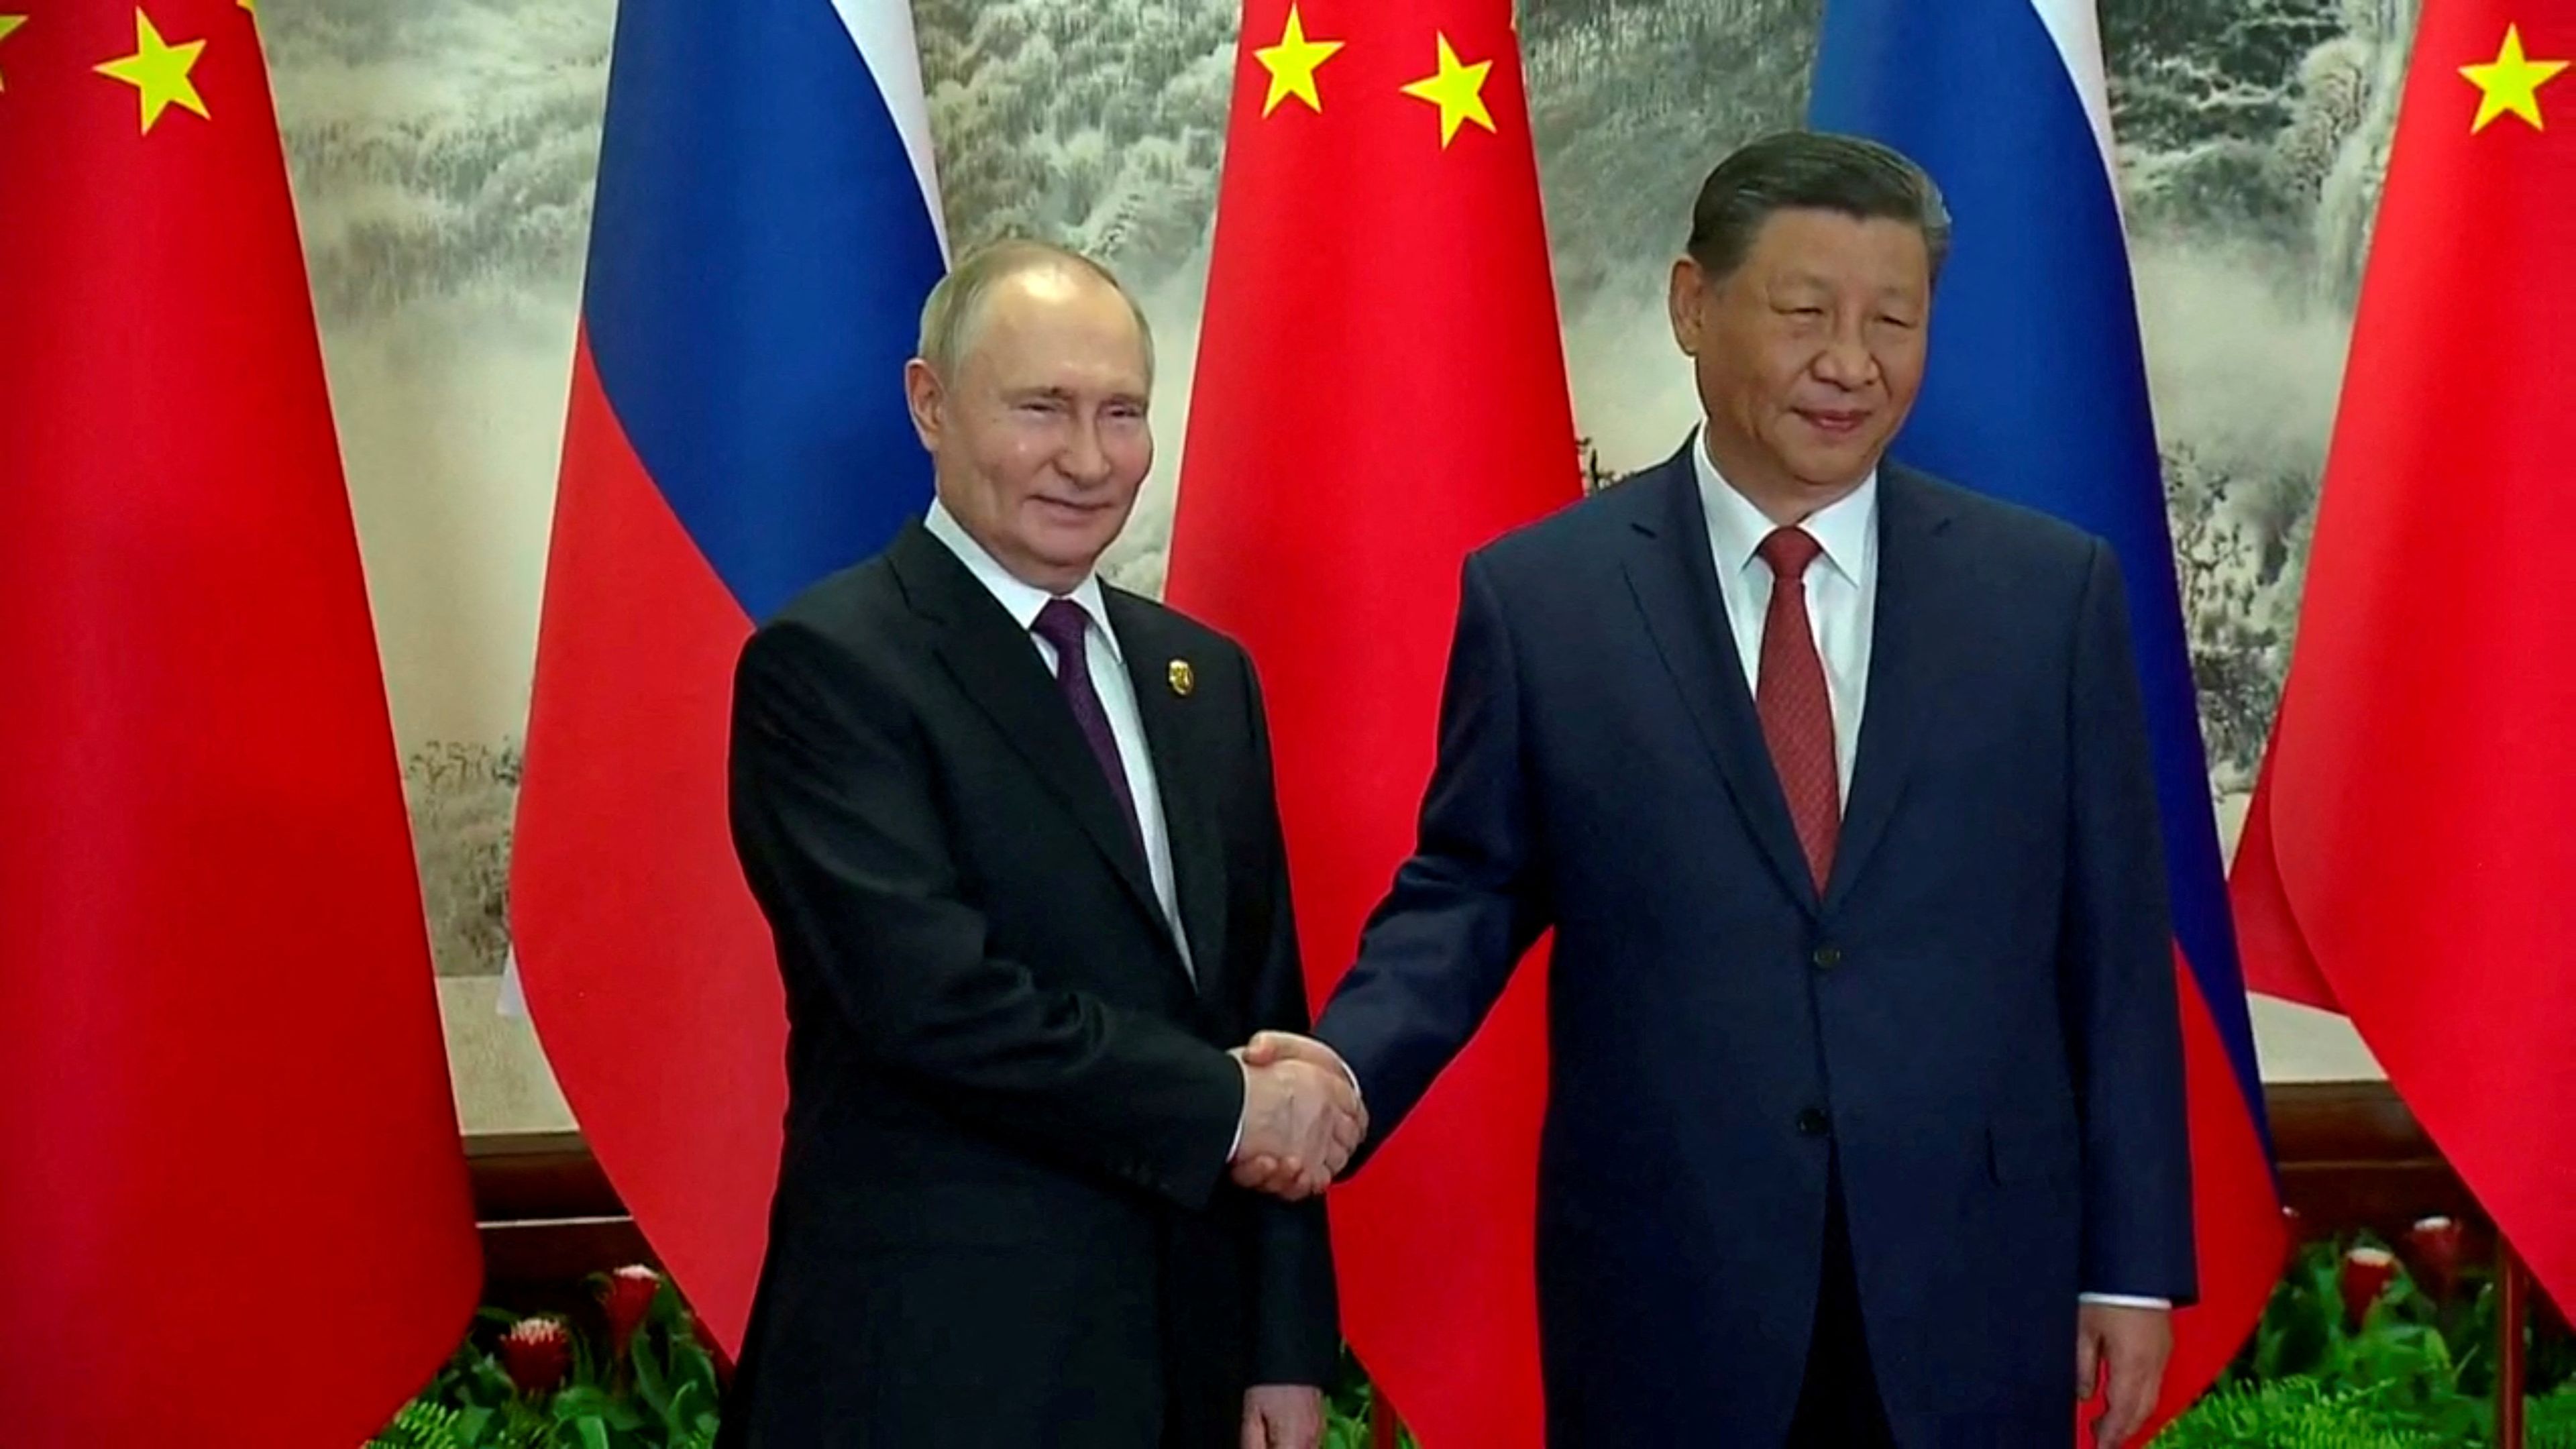 La foto del día: "Seguiremos consolidando nuestra amistad y defenderemos la justicia en el mundo", ha afirmado el presidente chino, Xi Jinping, tras la llegada a China de Vladímir Putin.